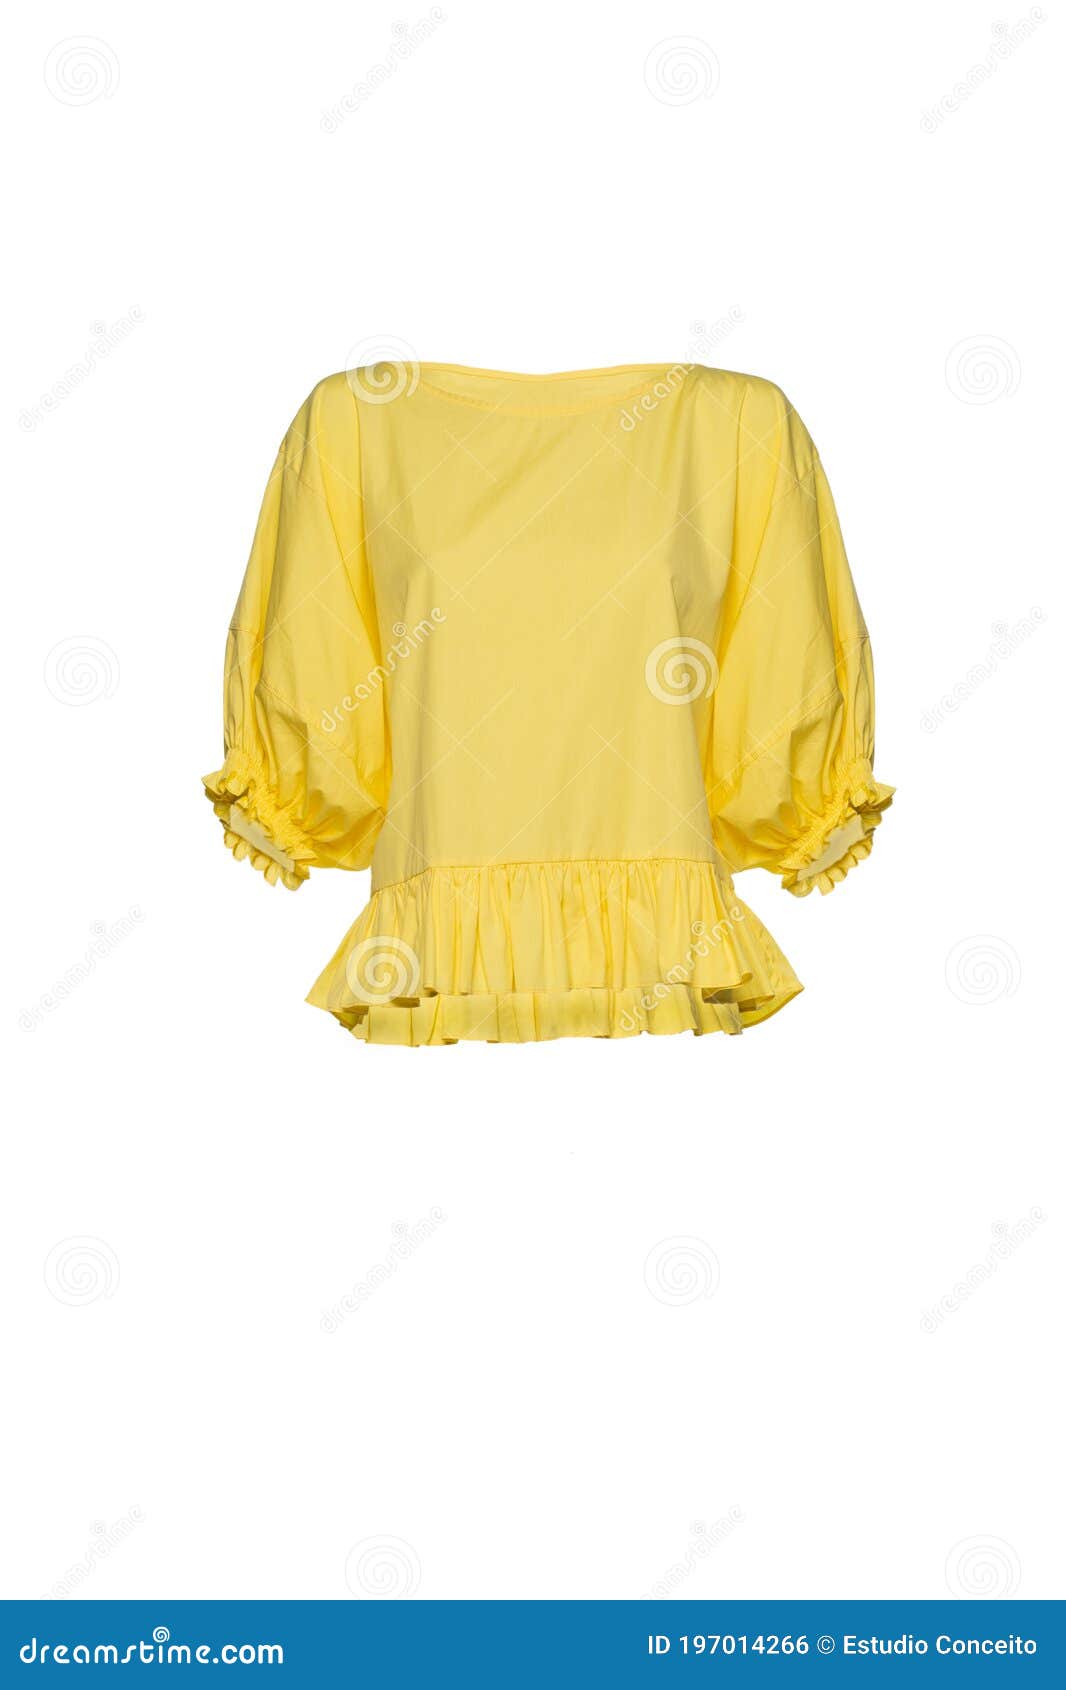 Yellow Female Blouse Isolated on White Background Stock Photo - Image ...